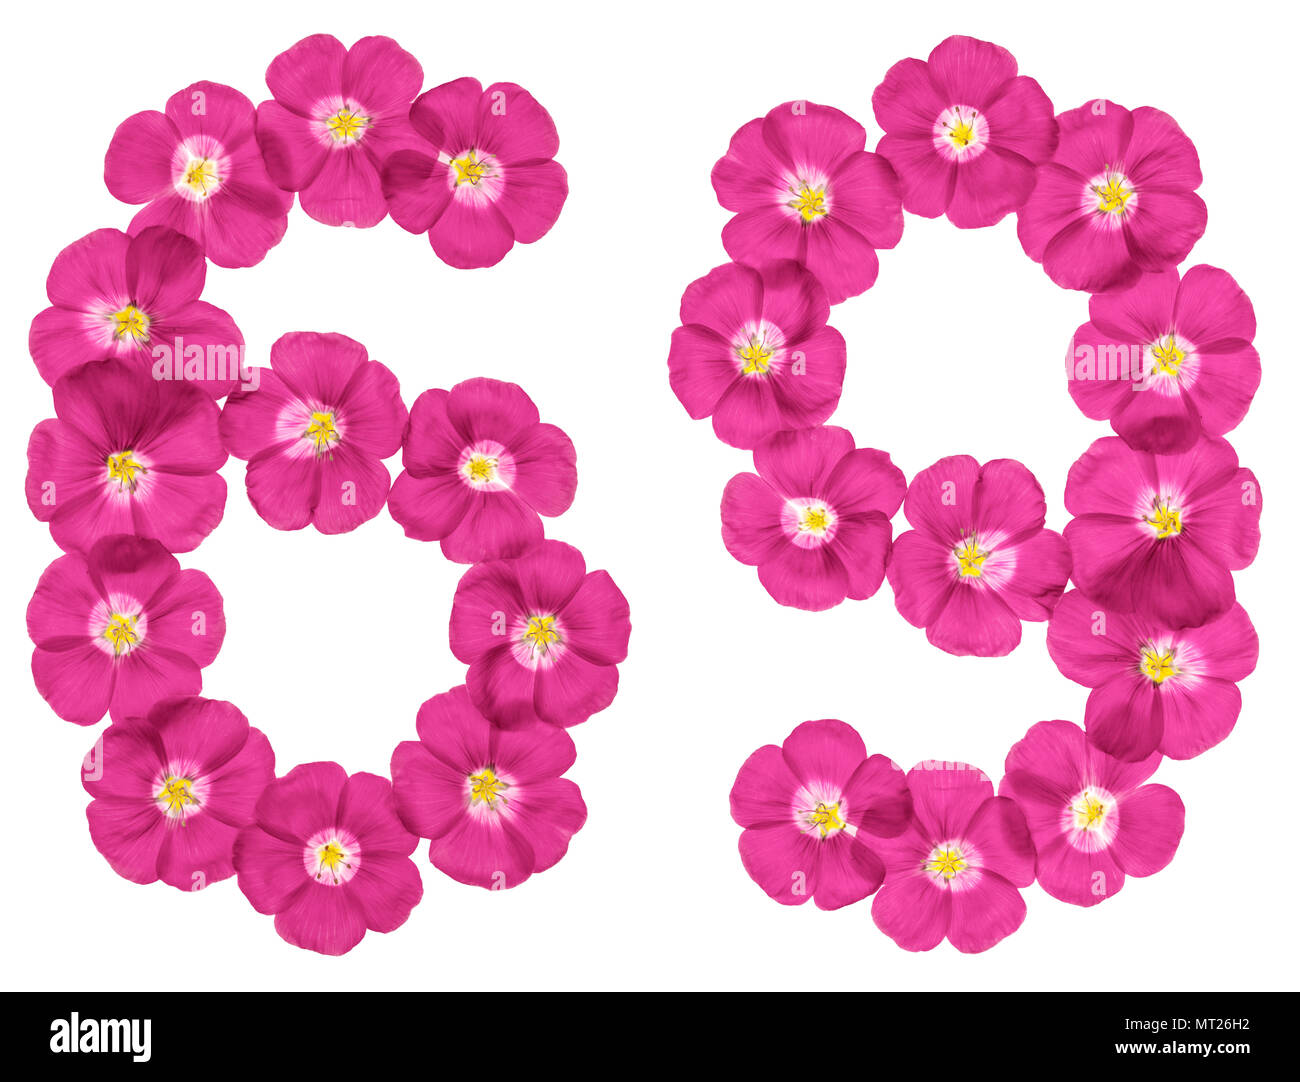 Numero arabo 69, sessanta nove, da fiori di colore rosa del lino, isolato su sfondo bianco Foto Stock